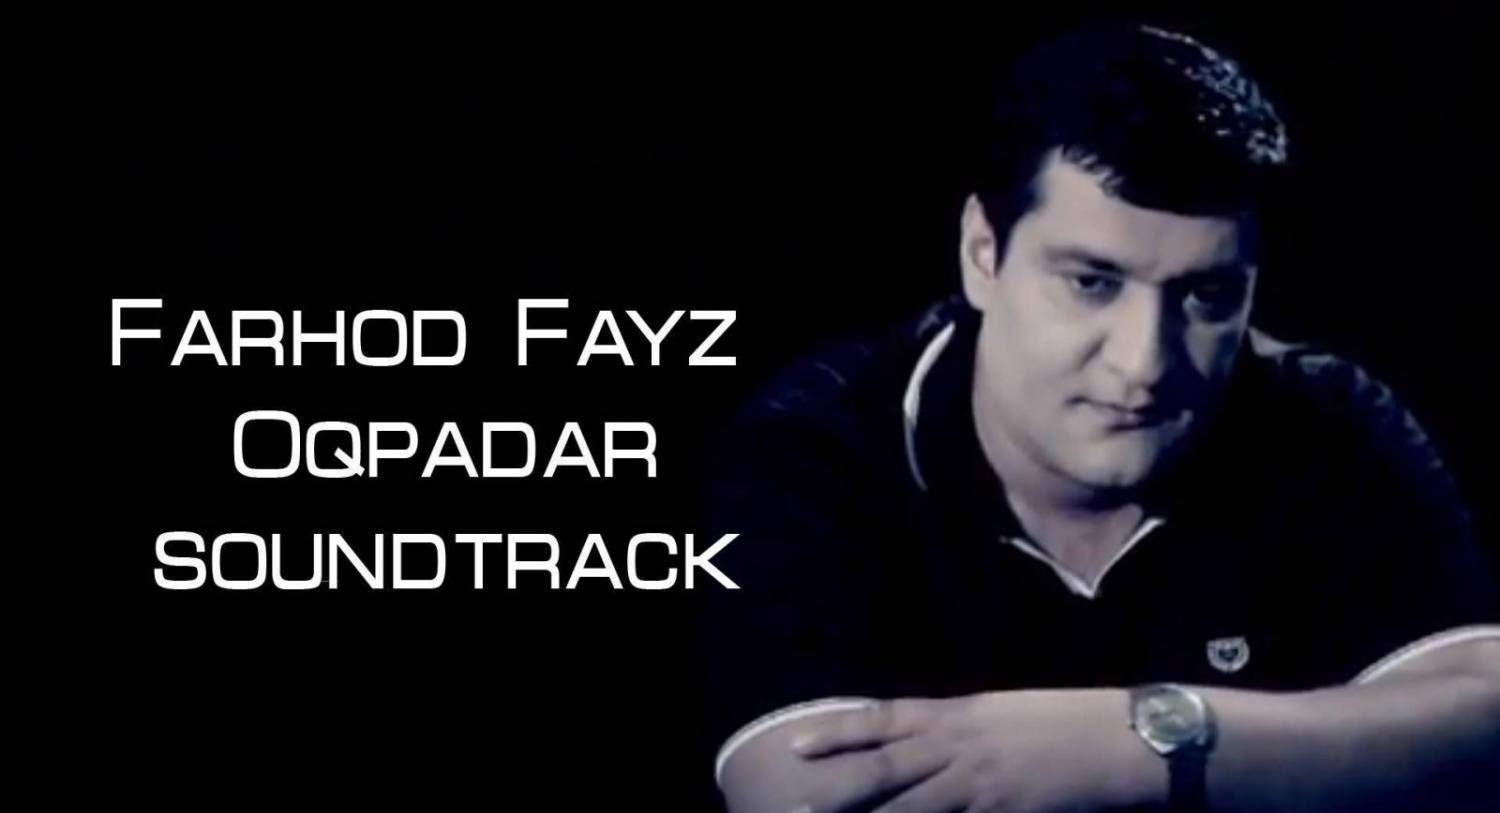 FARHOD FAYZ - OQPADAR (2013)